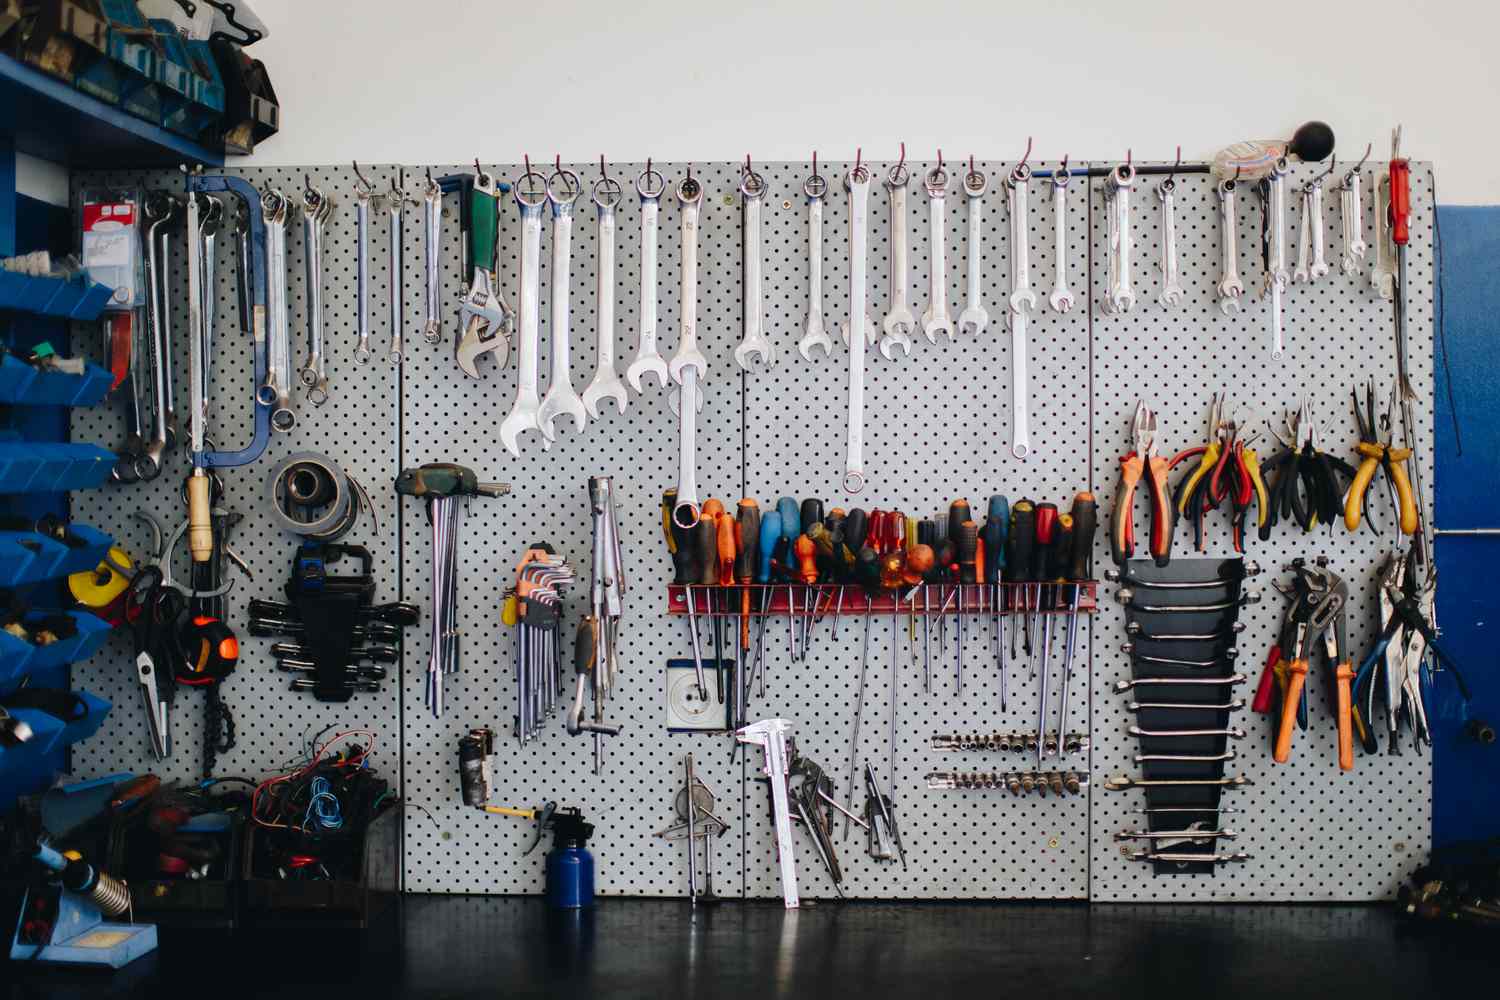 Muro organizado de herramientas para mejoras del hogar